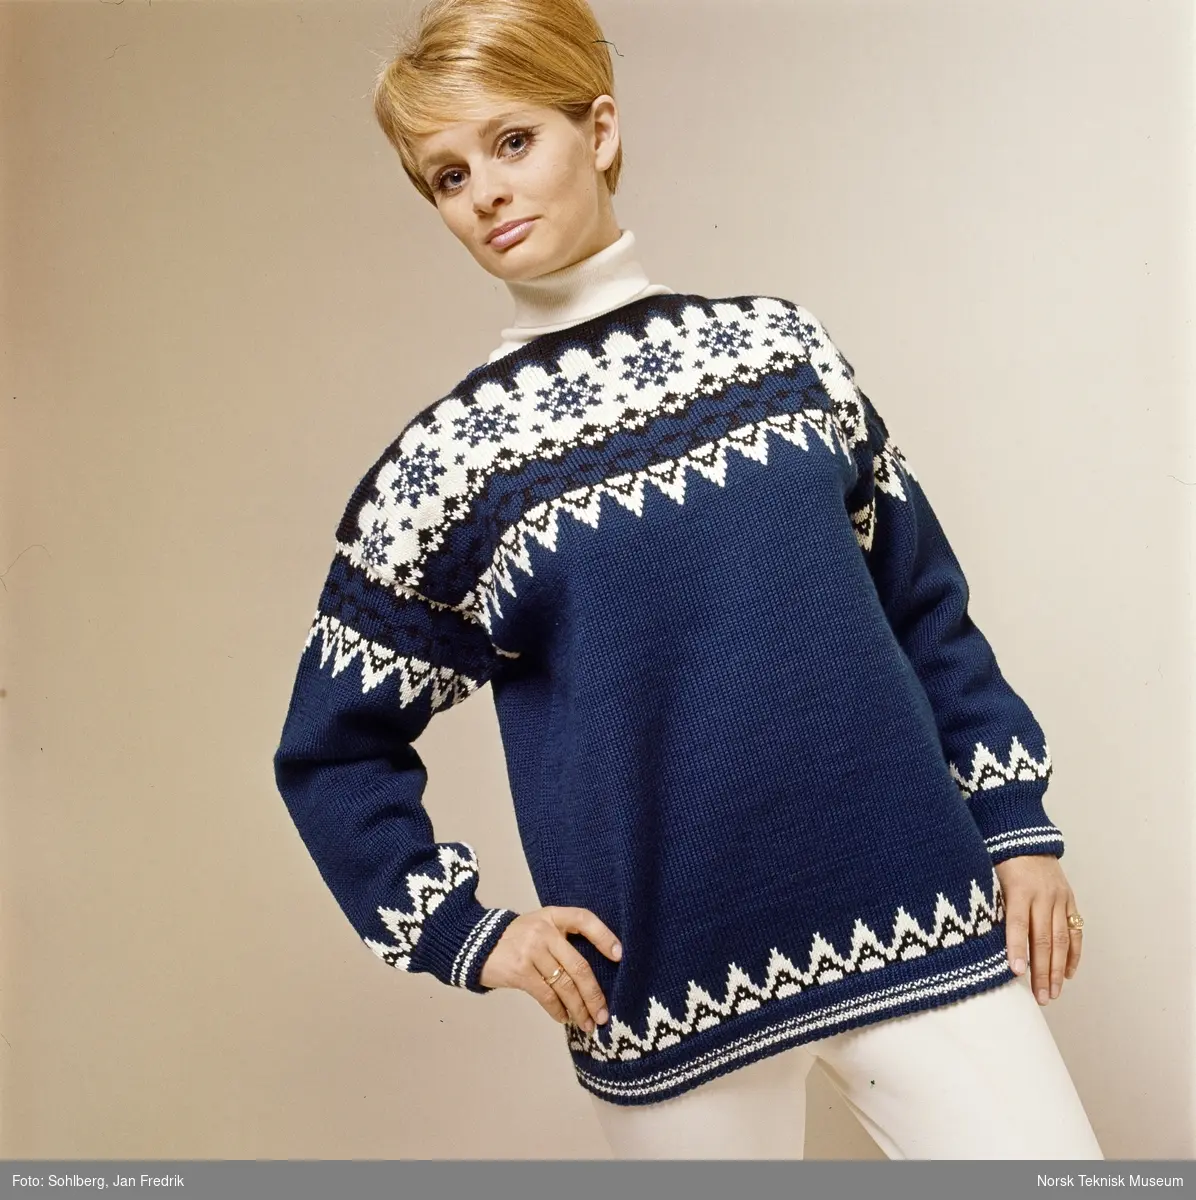 En kvinnelig modell viser tidens strikkemote. Hun har en blå strikkegenser med mønster i hvitt og sort. Usikker datering